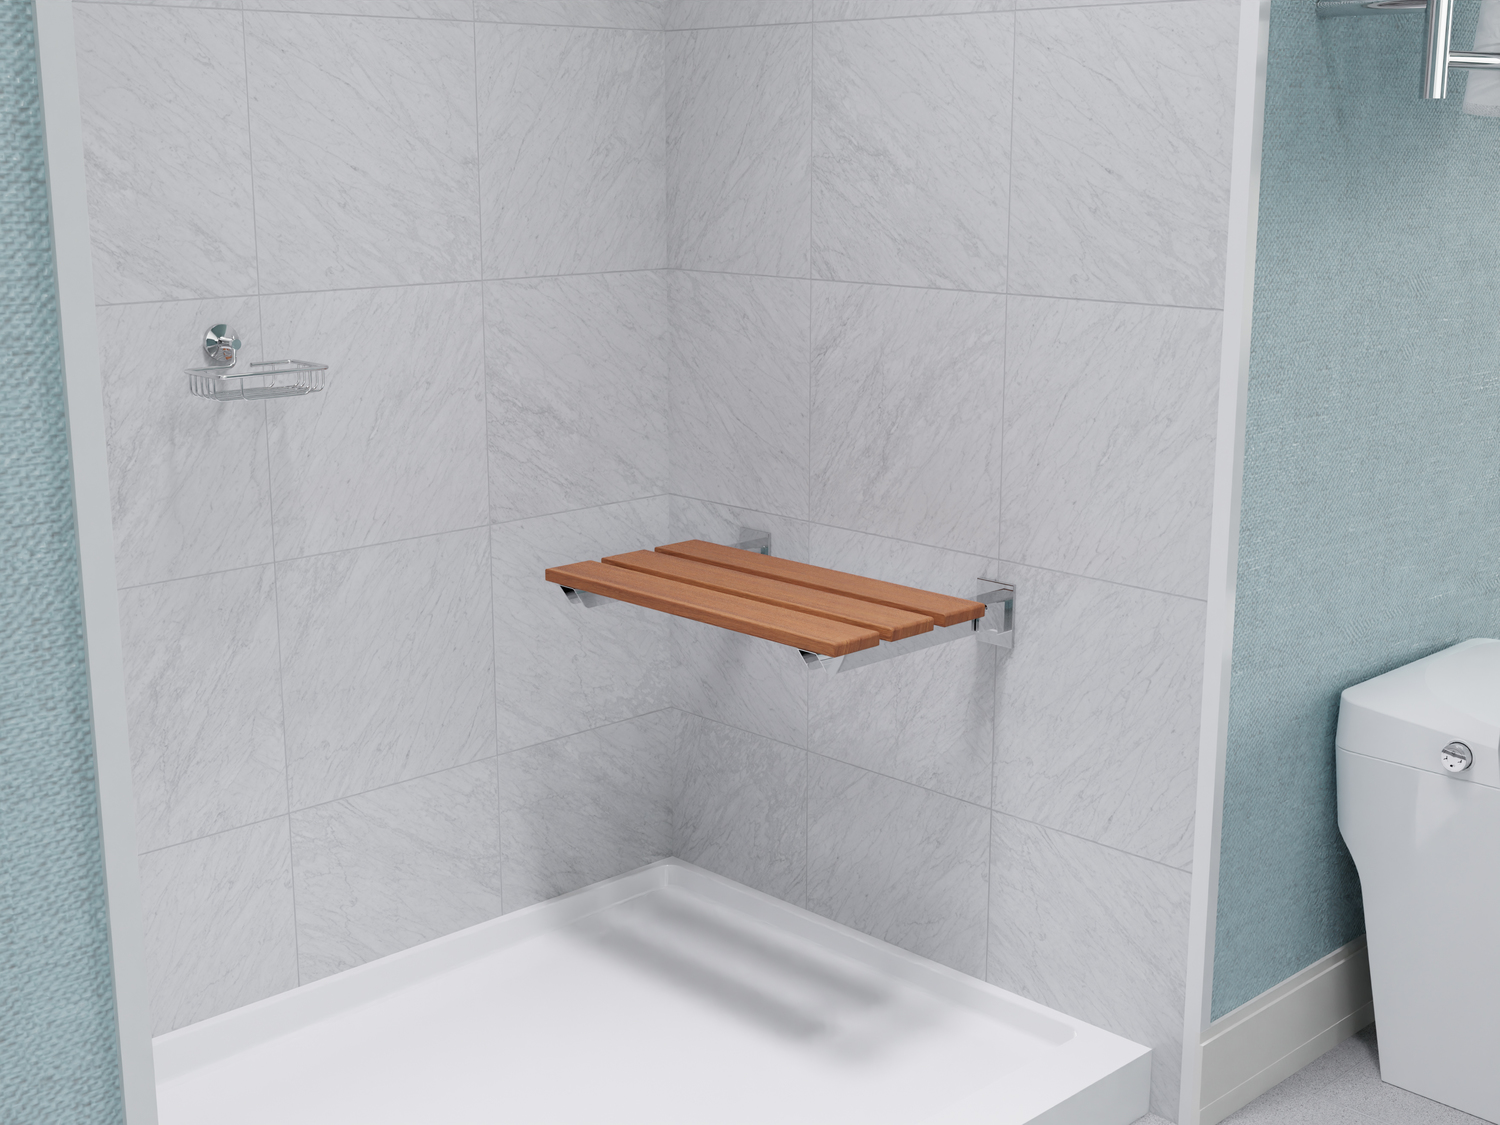 cheap bath chairs Anzzi BATHROOM - Bath Accessories - Shower Seats Teak